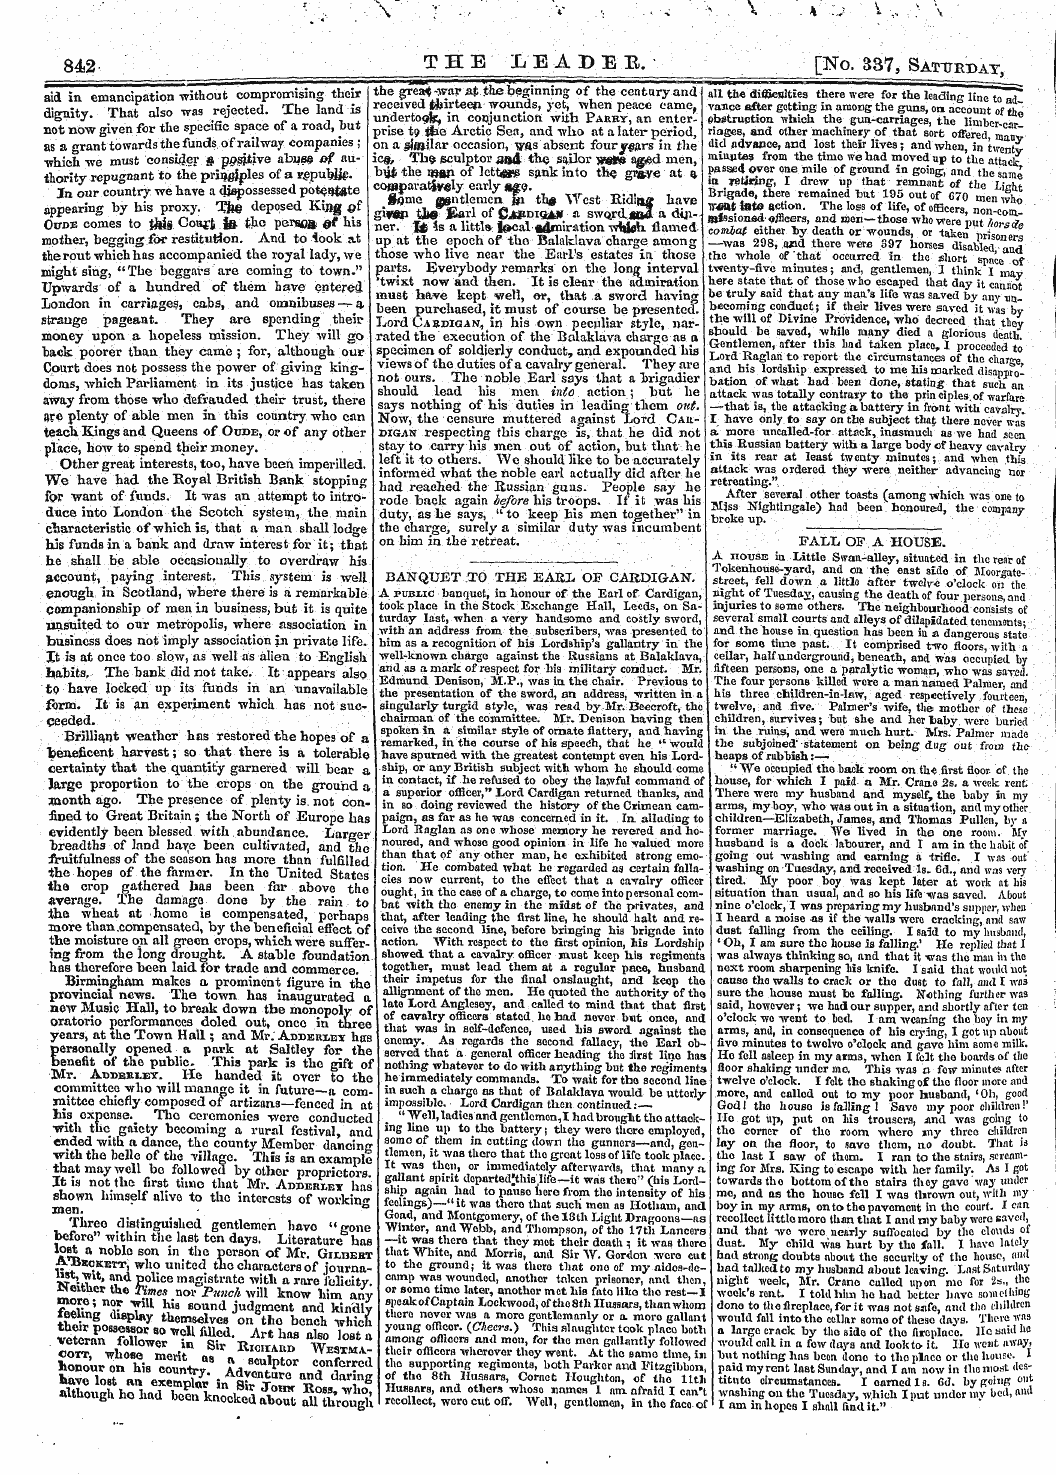 Leader (1850-1860): jS F Y, 2nd edition - Ban Q Uet To The E Ar 1 Of C A R D Igan ...